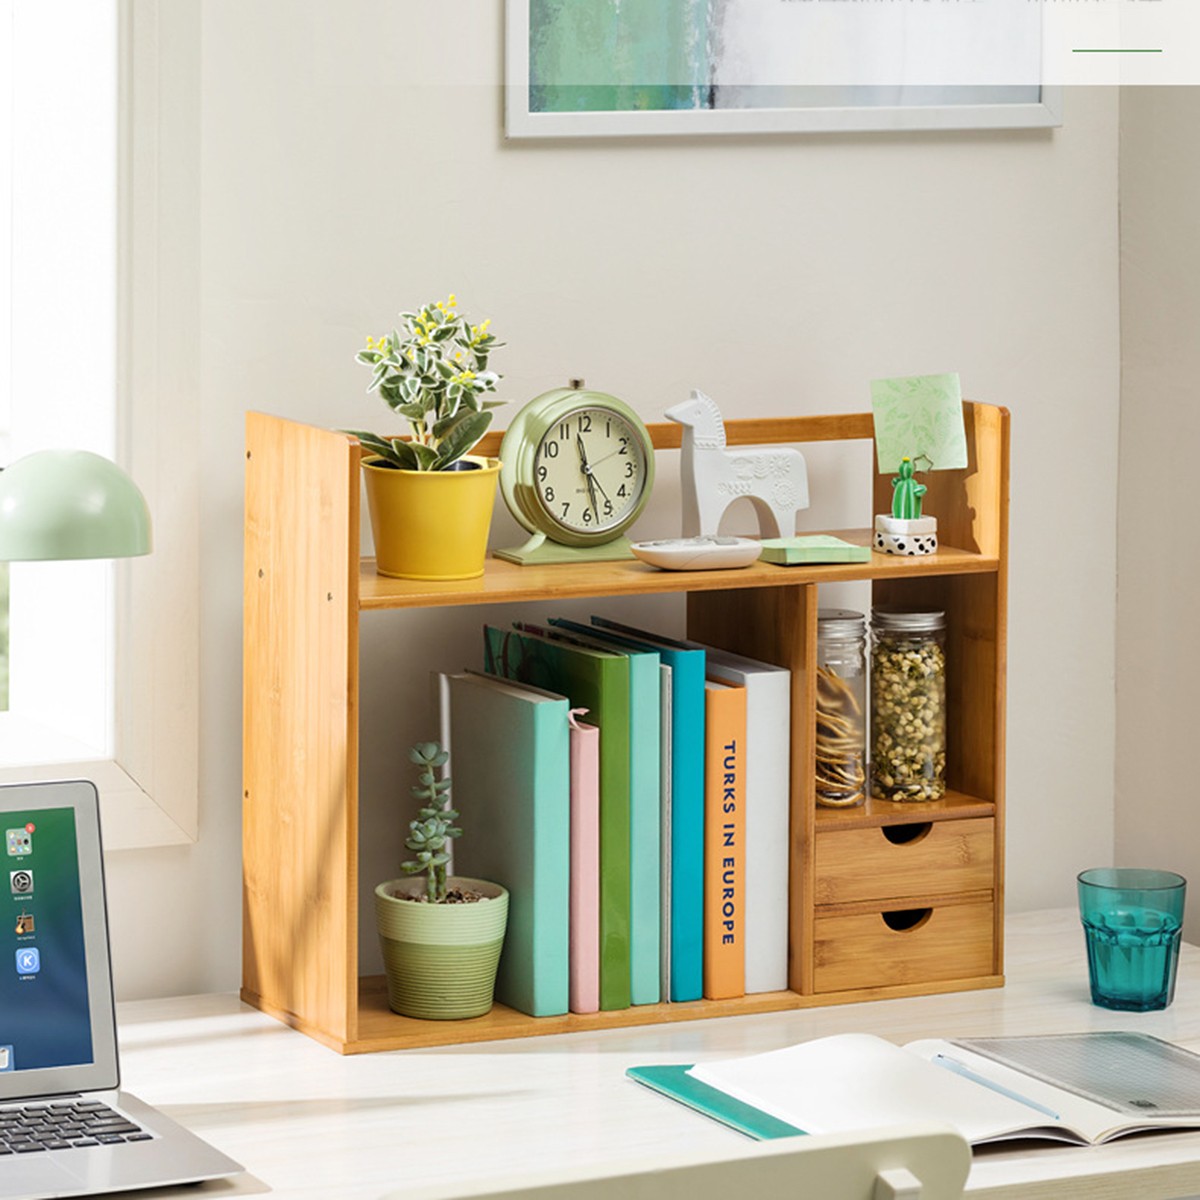 Diy bookshelf desktop organizer adjustable bamboo rack